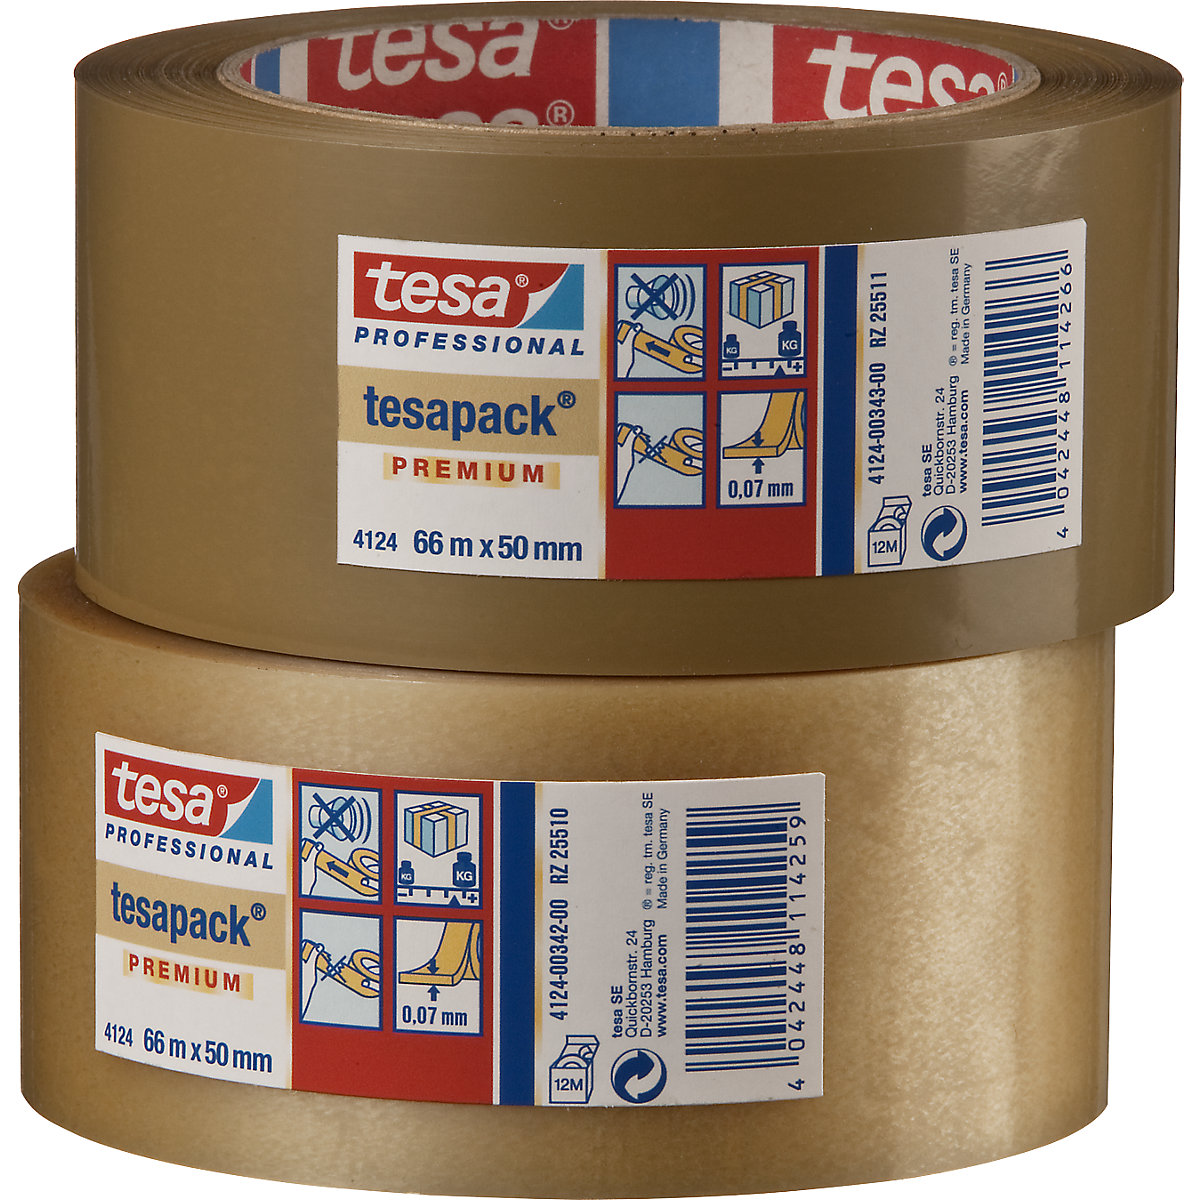 PVC packing tape – tesa